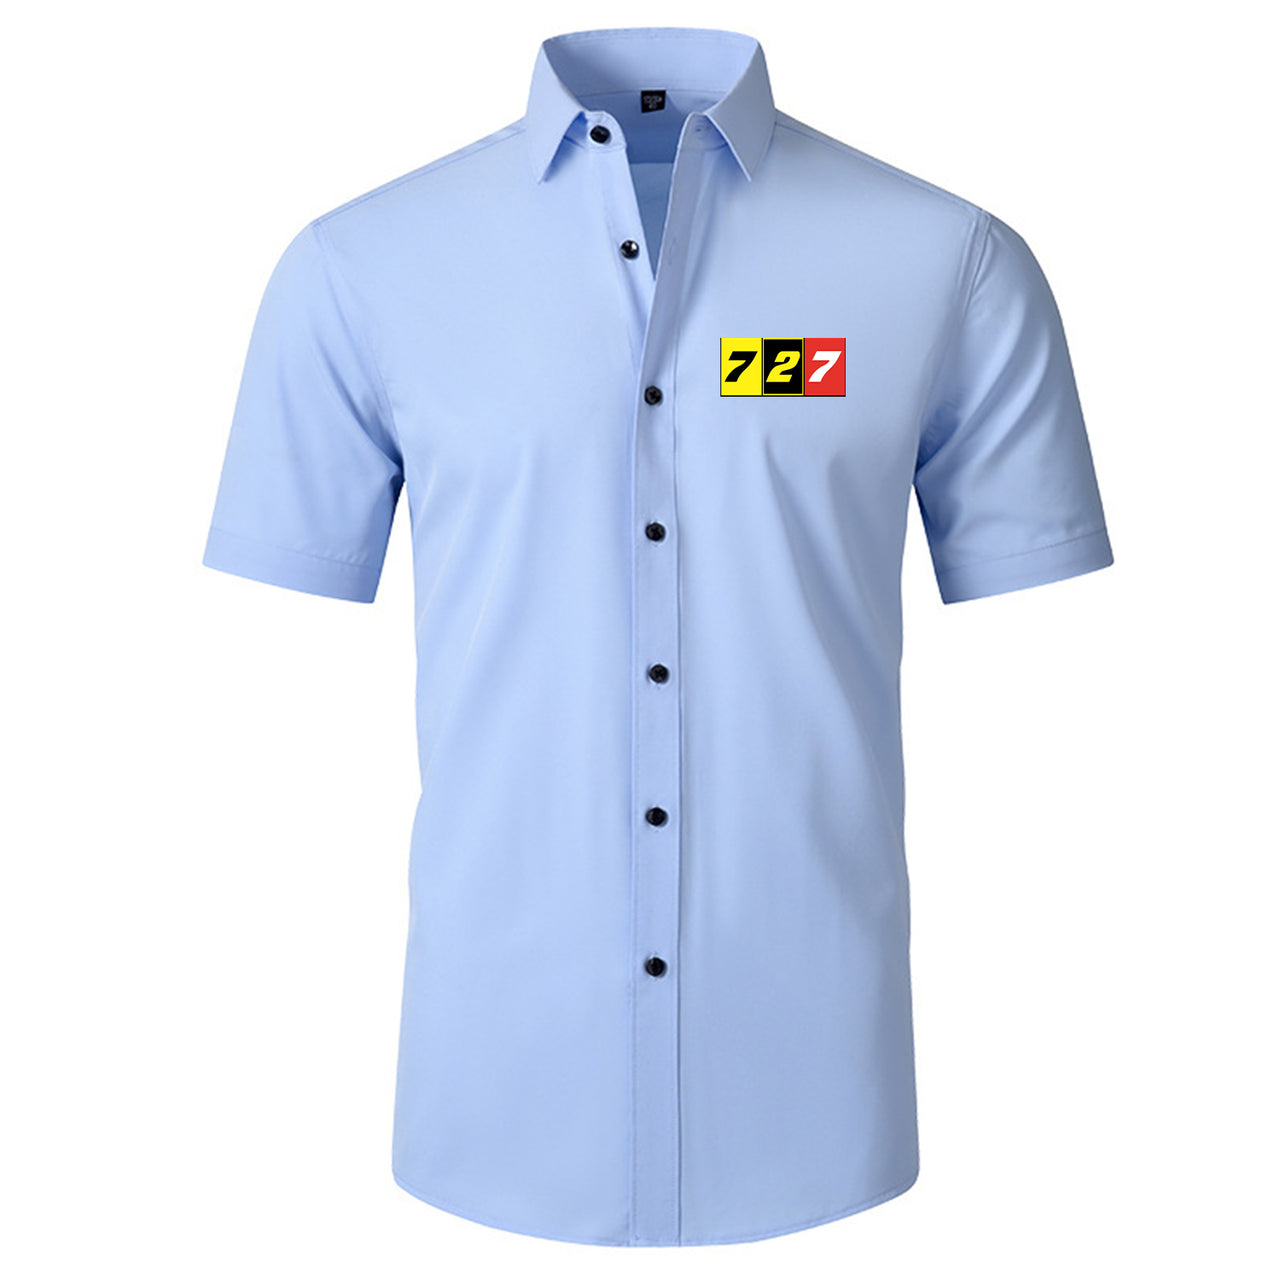 Flat Colourful 727 Designed Short Sleeve Shirts